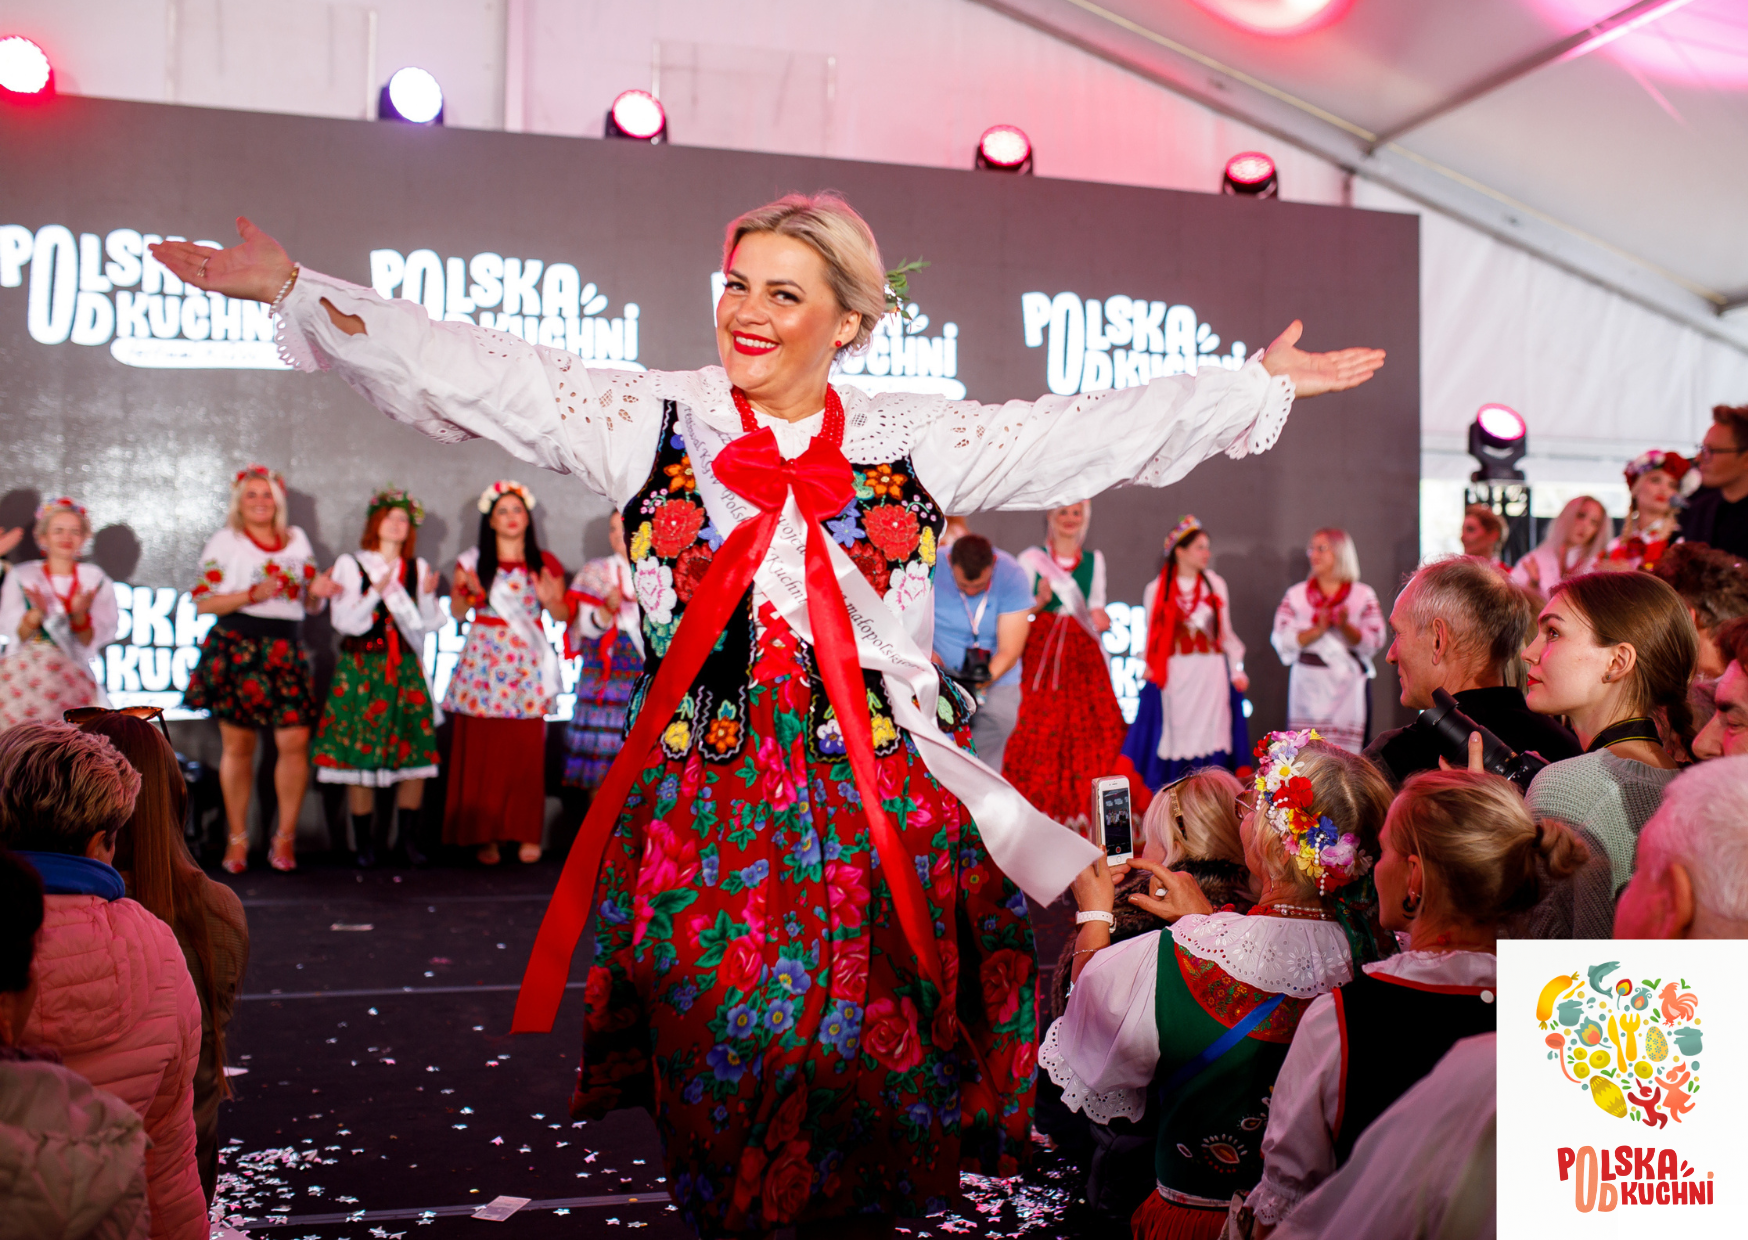 Kobieta w tradycyjnym, kolorowym polskim stroju ludowym z szeroko rozłożonymi ramionami tańczy, uśmiechając się. W tle tłum ludzi i inni tancerze.